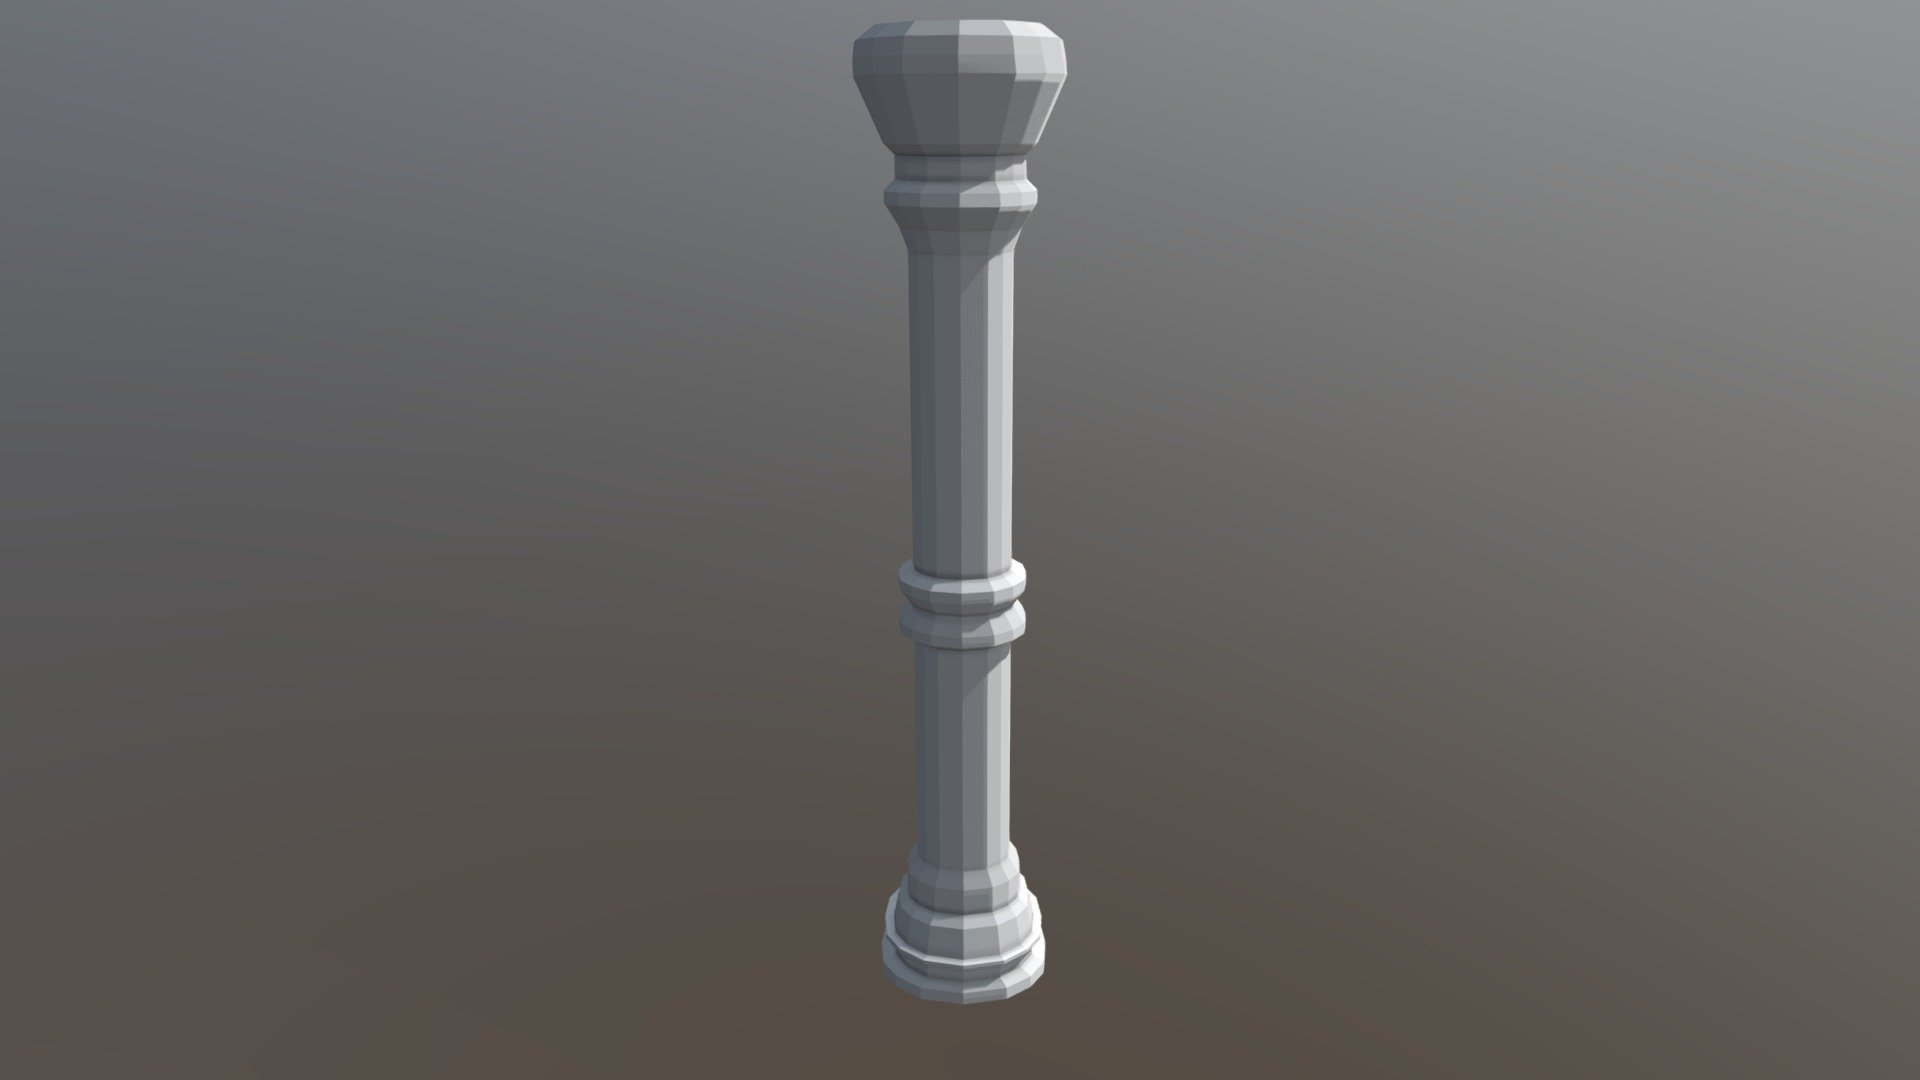 Pillar 3D Model